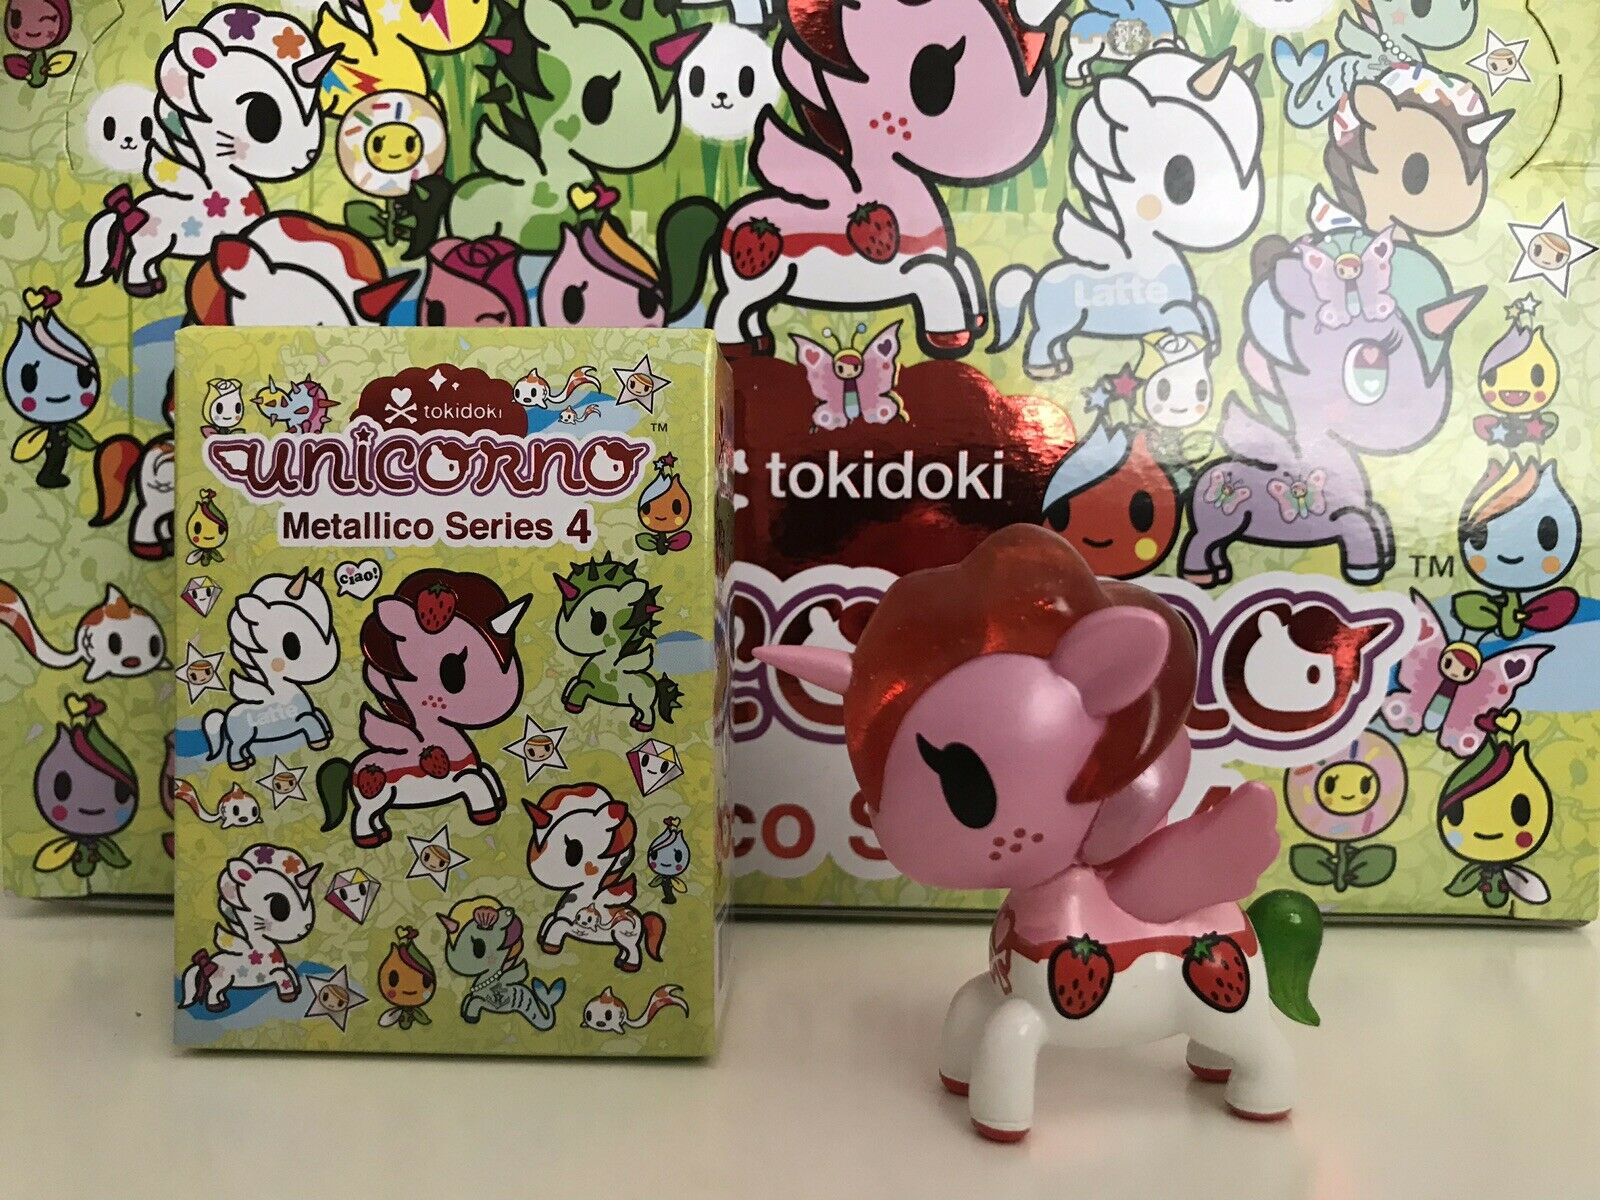 San Diego Comic Con 2019 Tokidoki - HD Wallpaper 